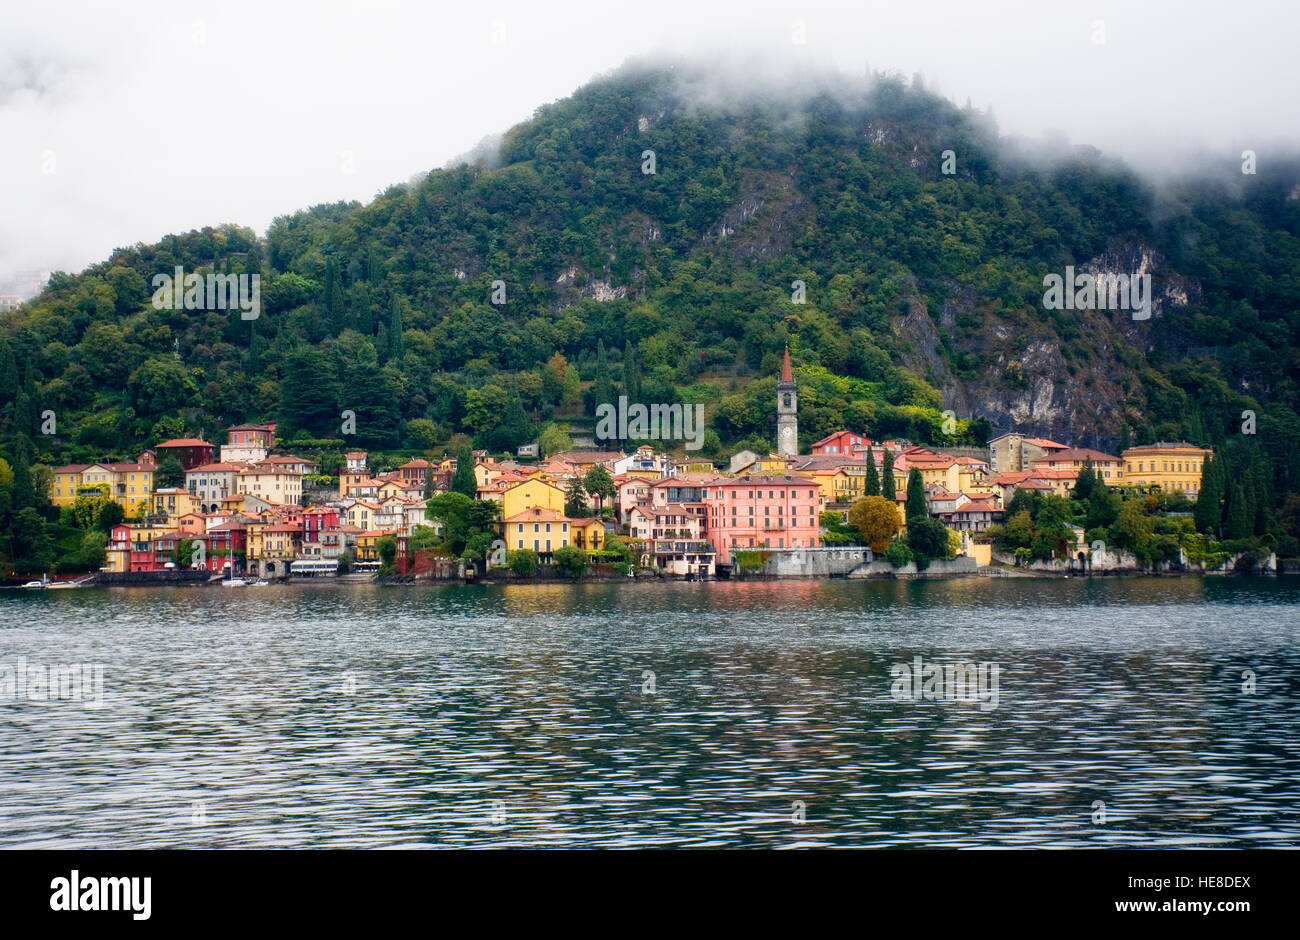 Anzeigen von Varenna, Comer see, Italien, Europa. Varenna ist eine Gemeinde am Comer See in der Provinz Lecco in der italienischen Region Lombardei. Stockfoto